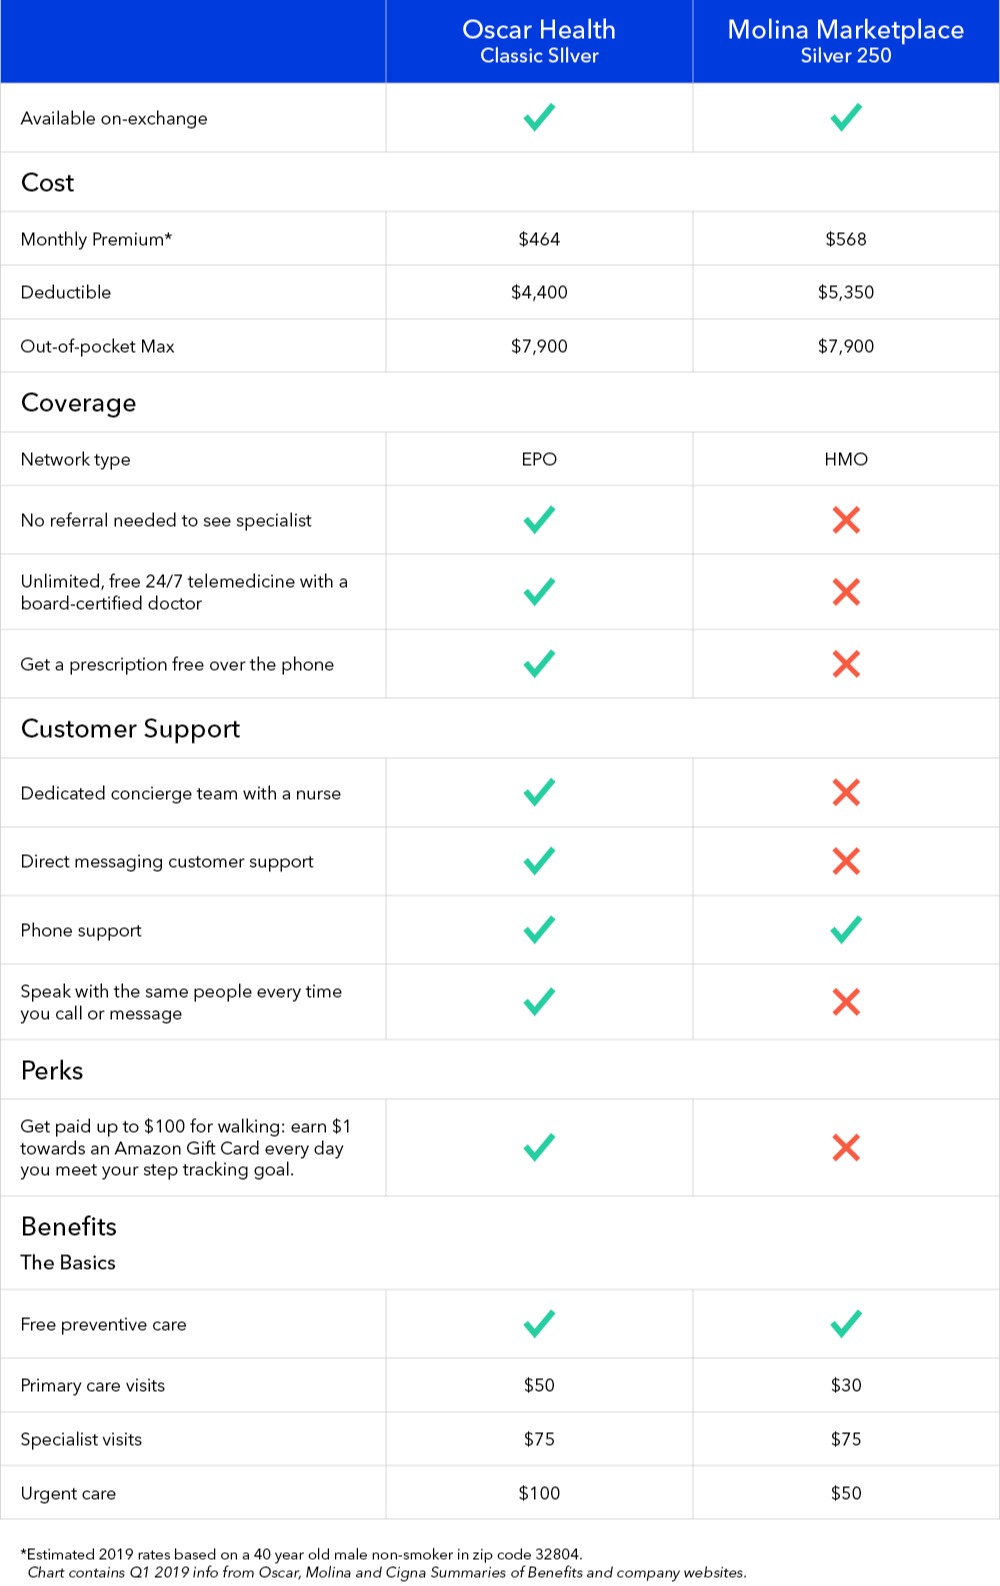 Health Insurance Comparison